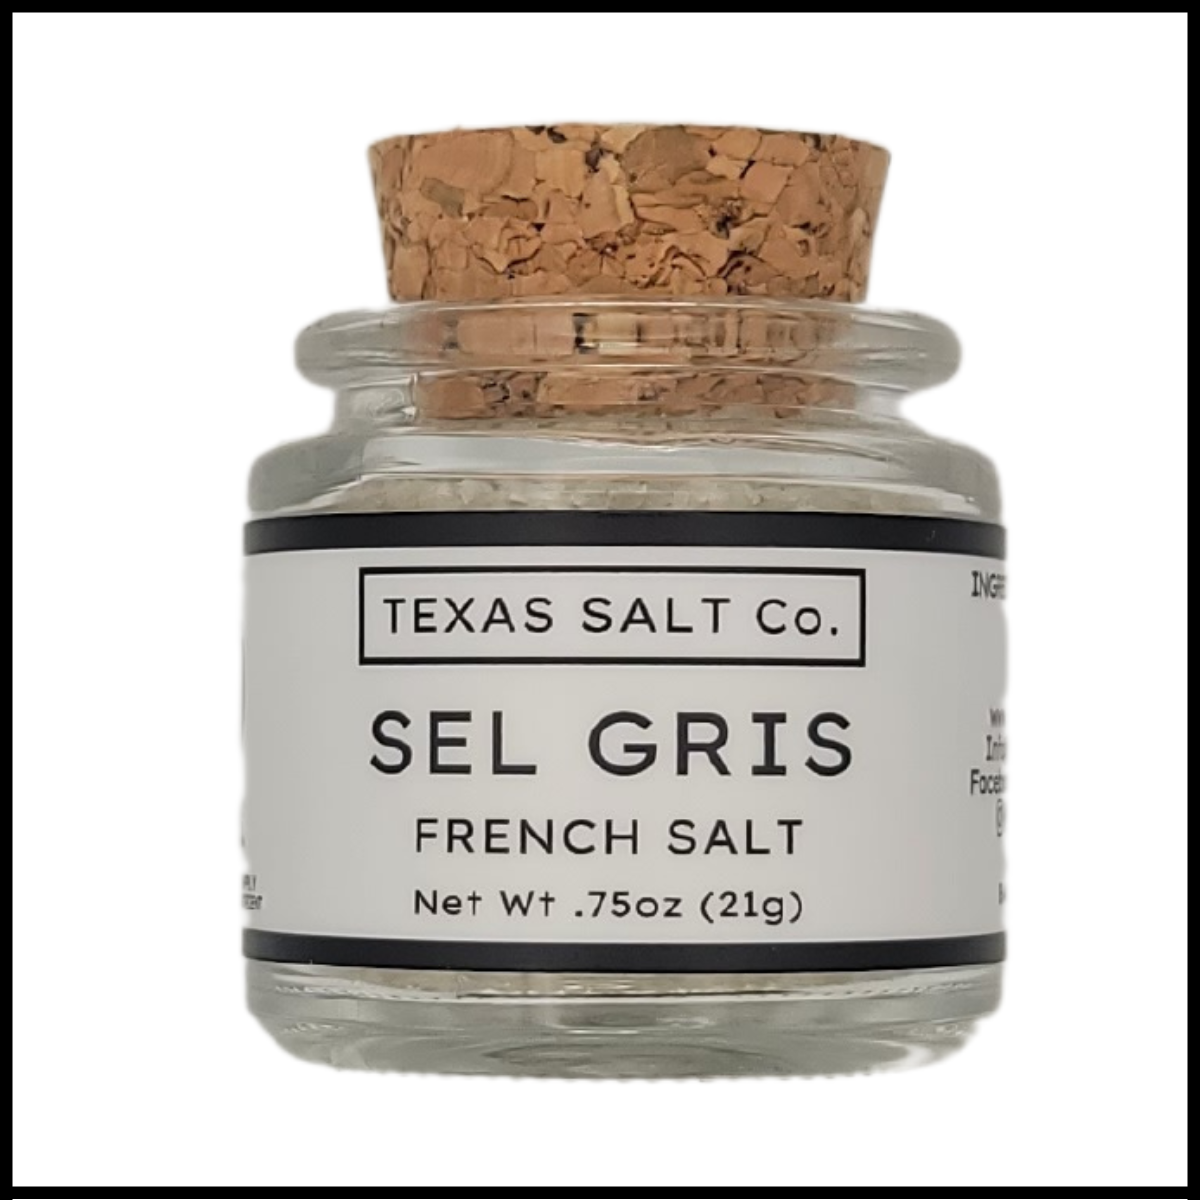 Celtic French Grey (Sel Gris) from Premier Salt's Sea Salt